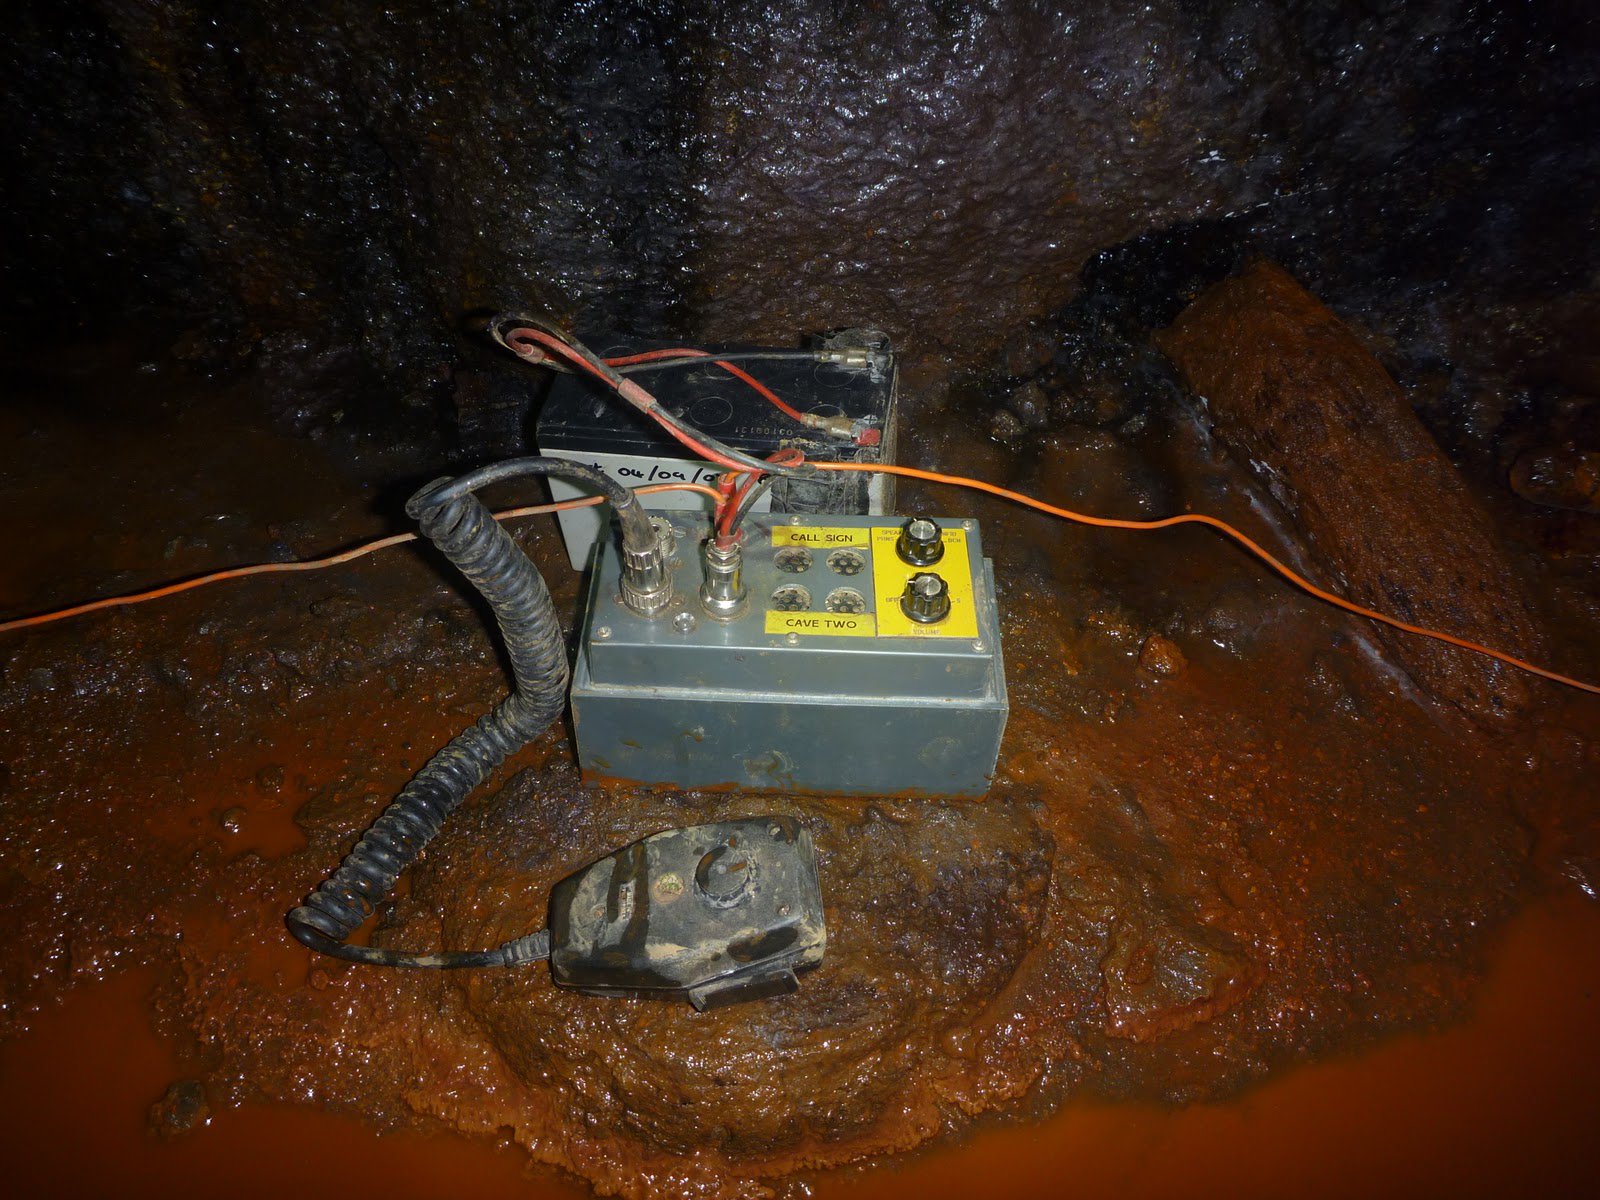 Тайские спасатели использовали радио Heyphone, разработанное радиолюбителем в 2001 году